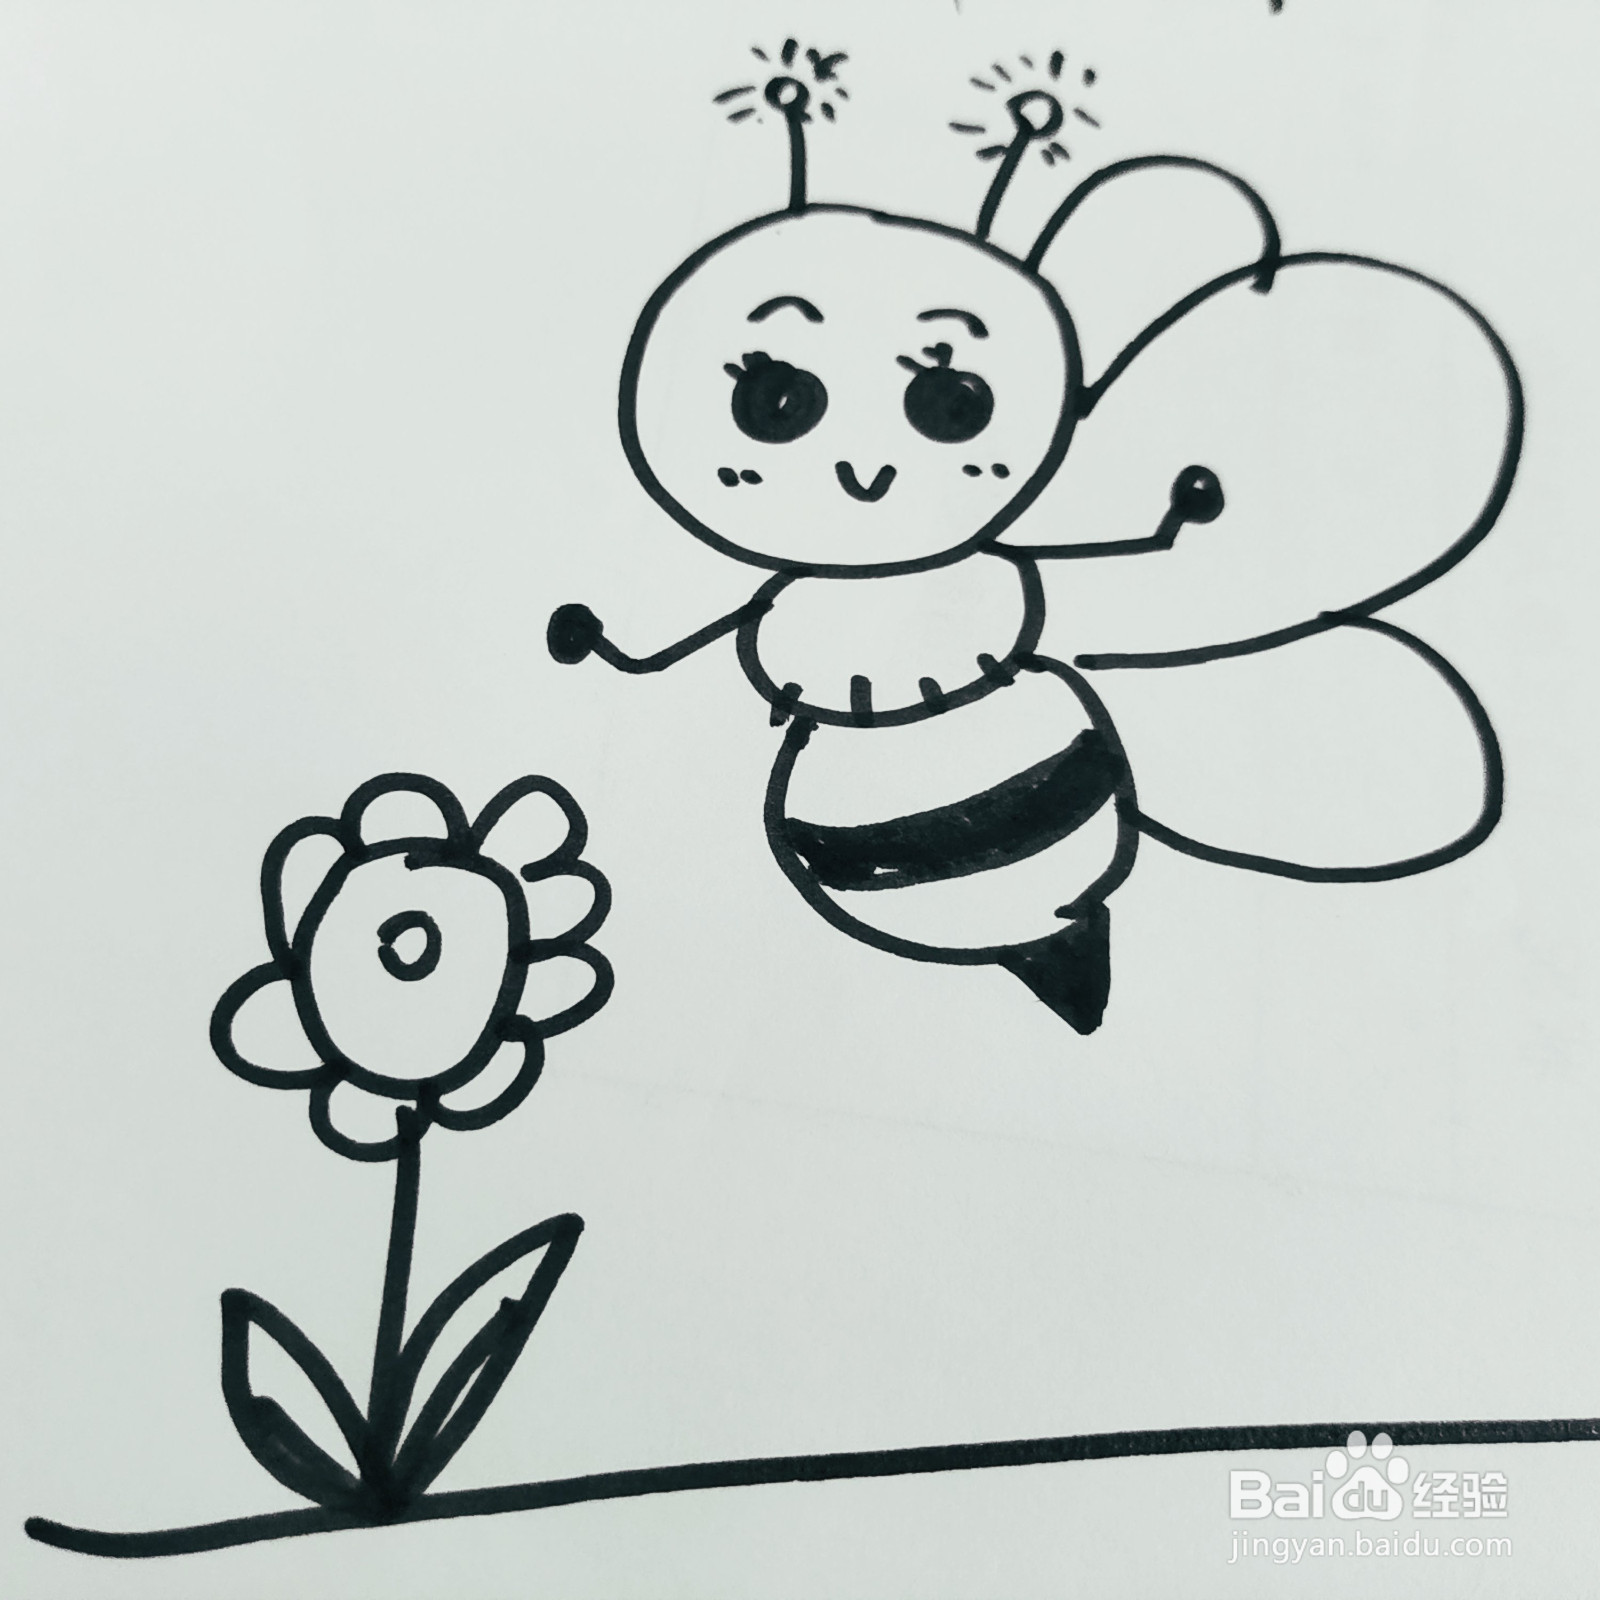 怎么来教给孩子画一只采花蜜的蜜蜂简笔画呢?